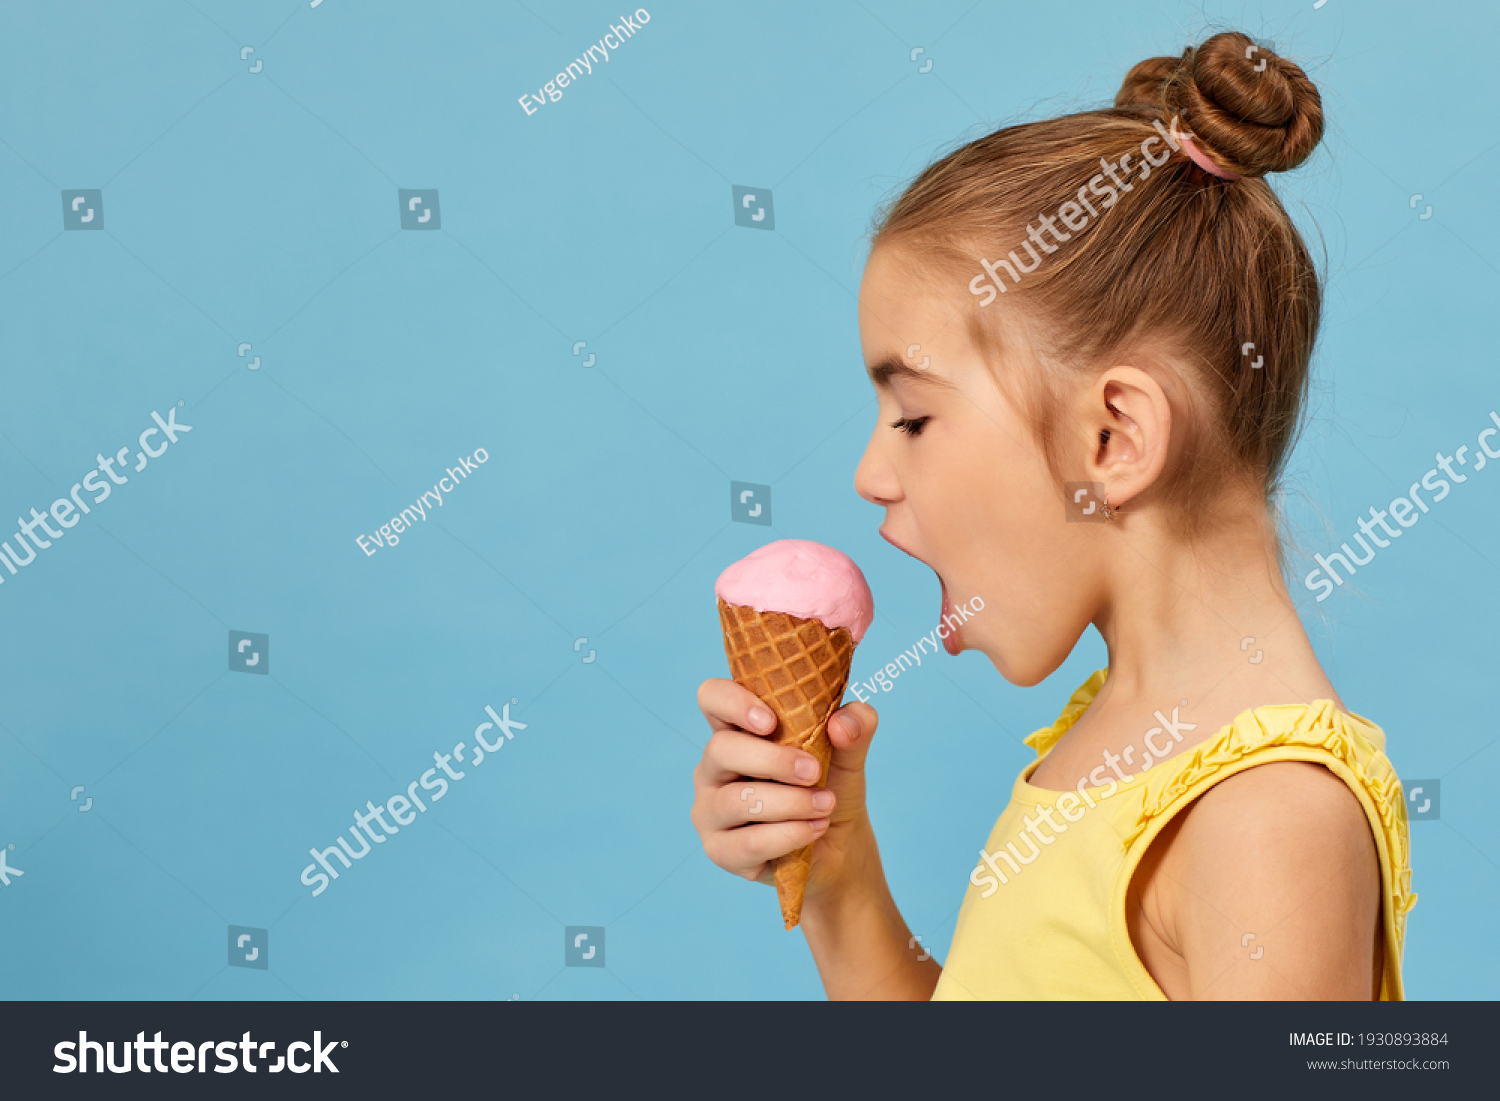 Покажи как девочки облизывают. Маленькая девочка ест мороженое. Маленькая девочка и мороженое. Маленькая девочка облизывает мороженое. Ребенок с мороженым.